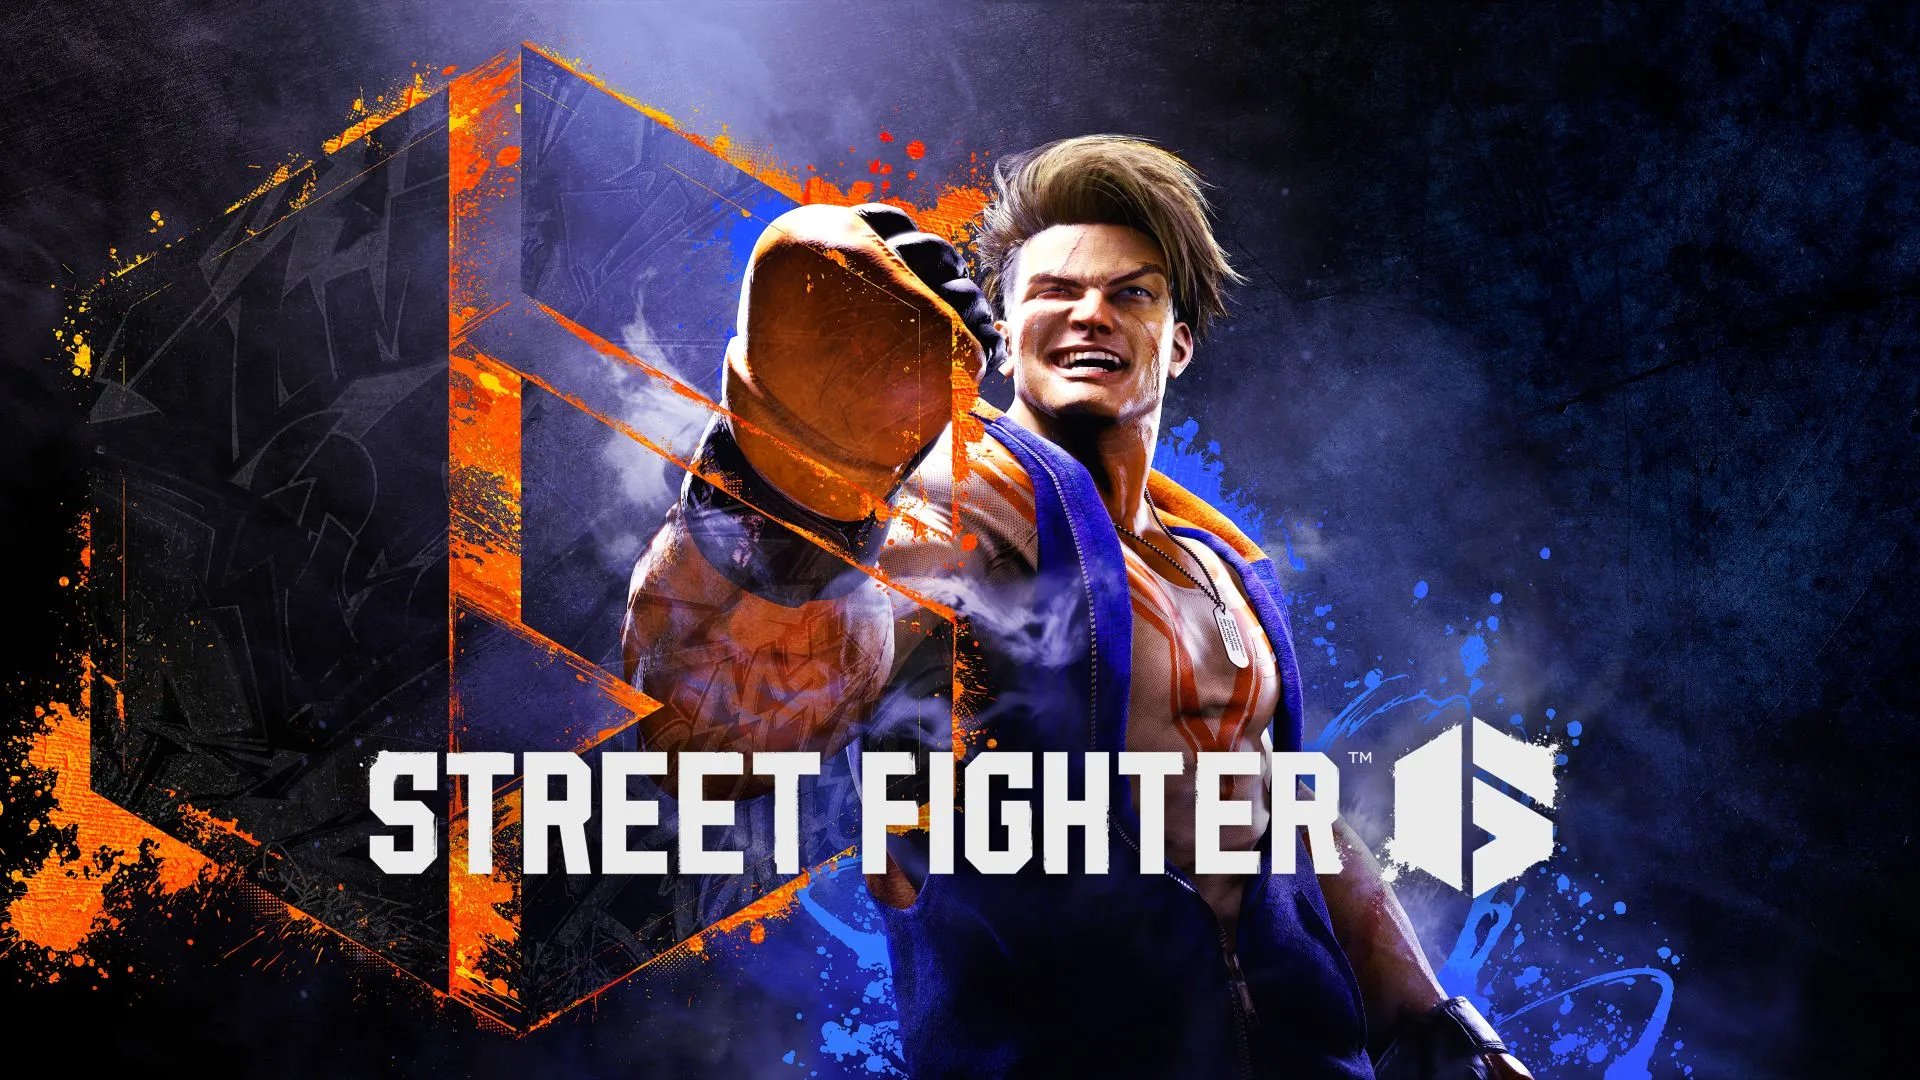 Street Fighter: Legendary ha adquirido los derechos de la franquicia 10